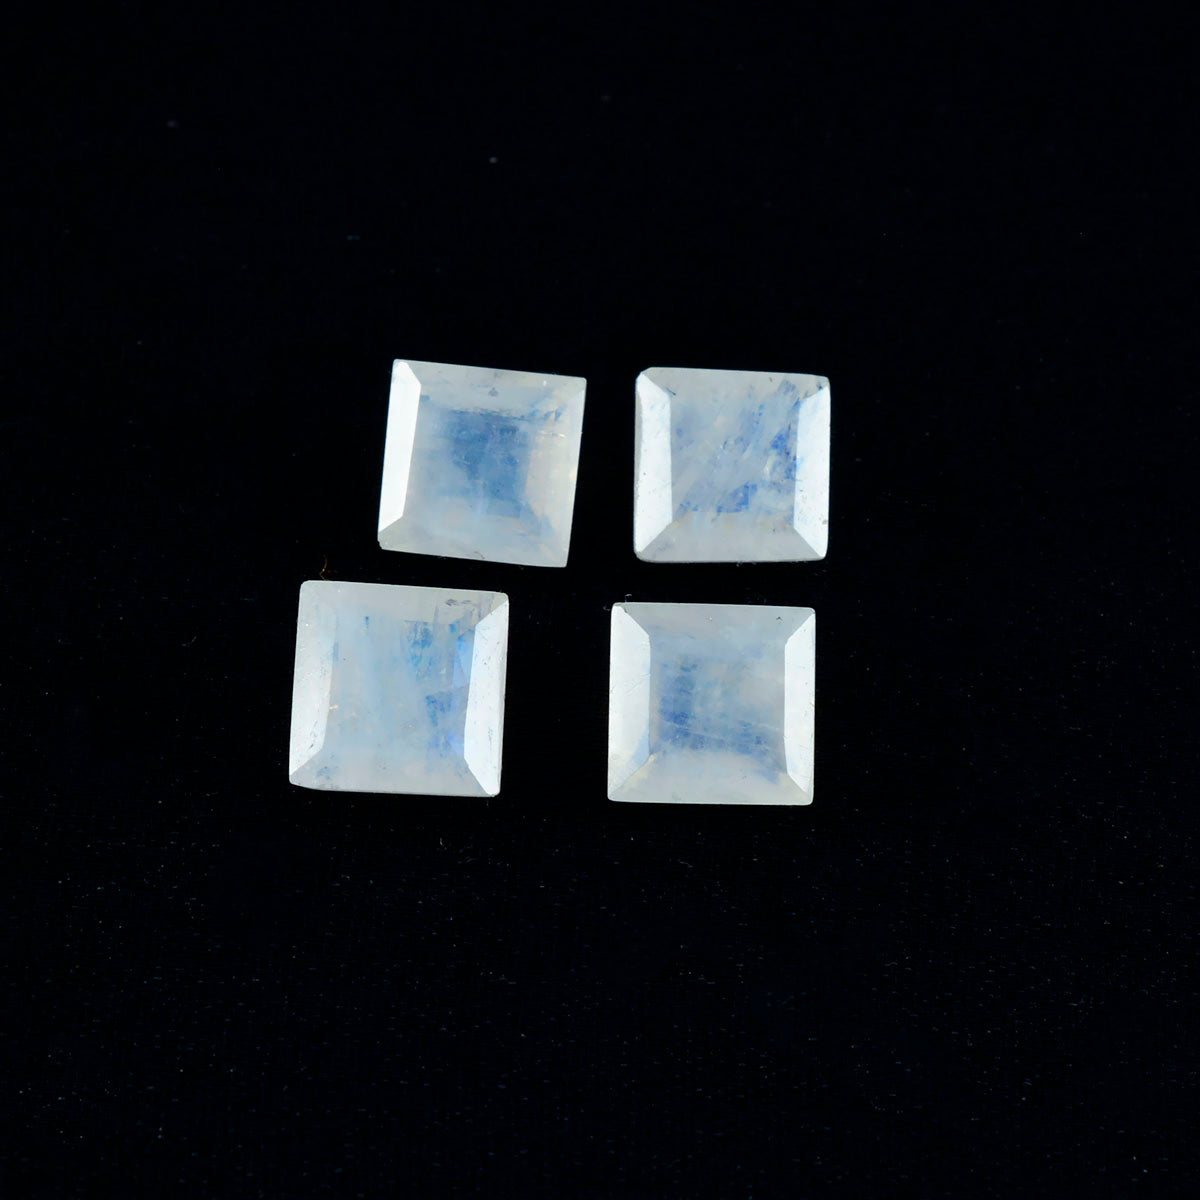 Riyogems 1 Stück weißer Regenbogen-Mondstein, facettiert, 13 x 13 mm, quadratische Form, gut aussehender, hochwertiger loser Stein